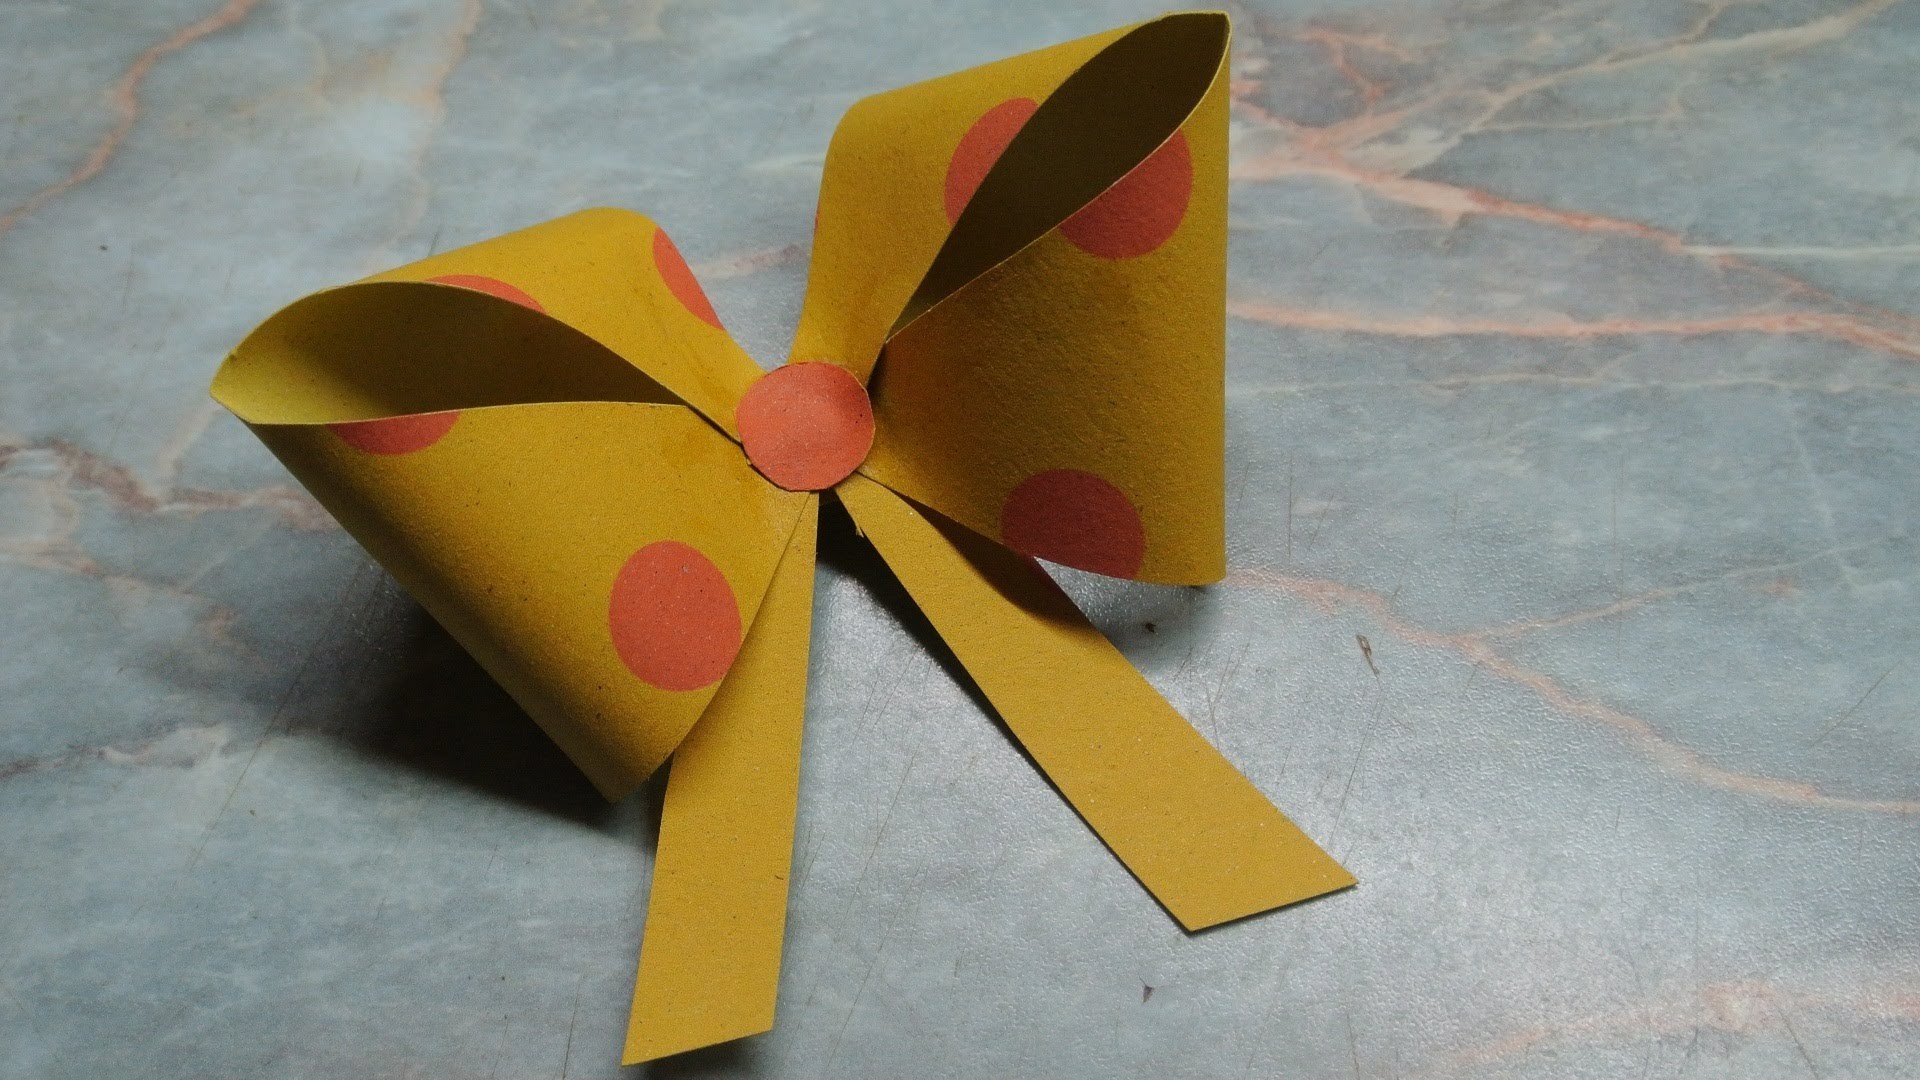 Mašle z papíru - diy (Ribbons of paper)